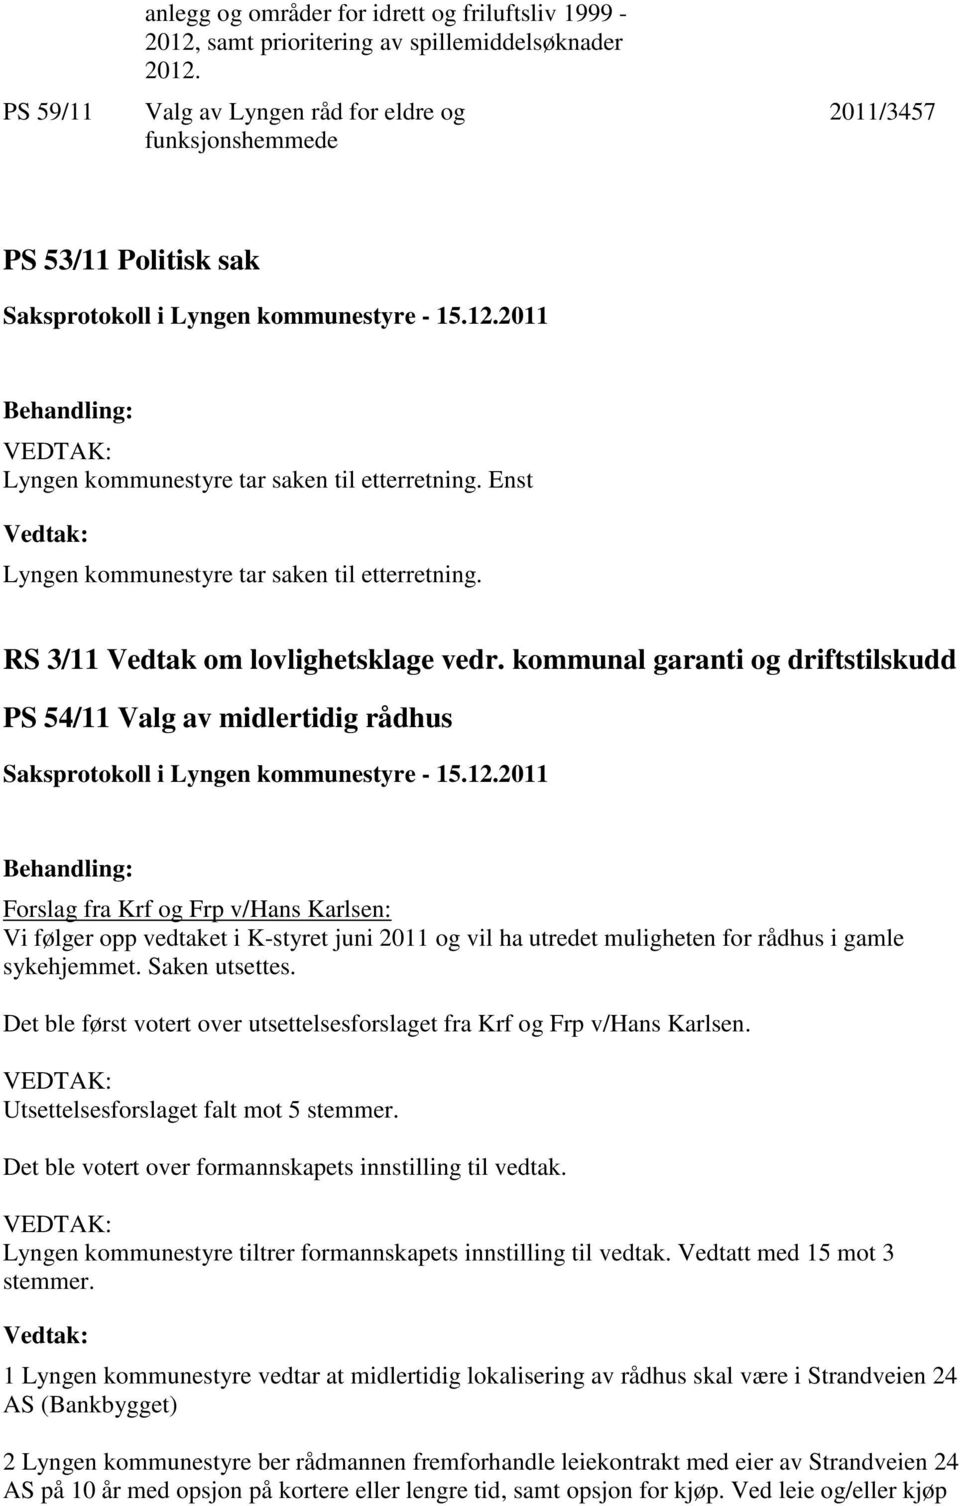 Enst Lyngen kommunestyre tar saken til etterretning. RS 3/11 Vedtak om lovlighetsklage vedr.